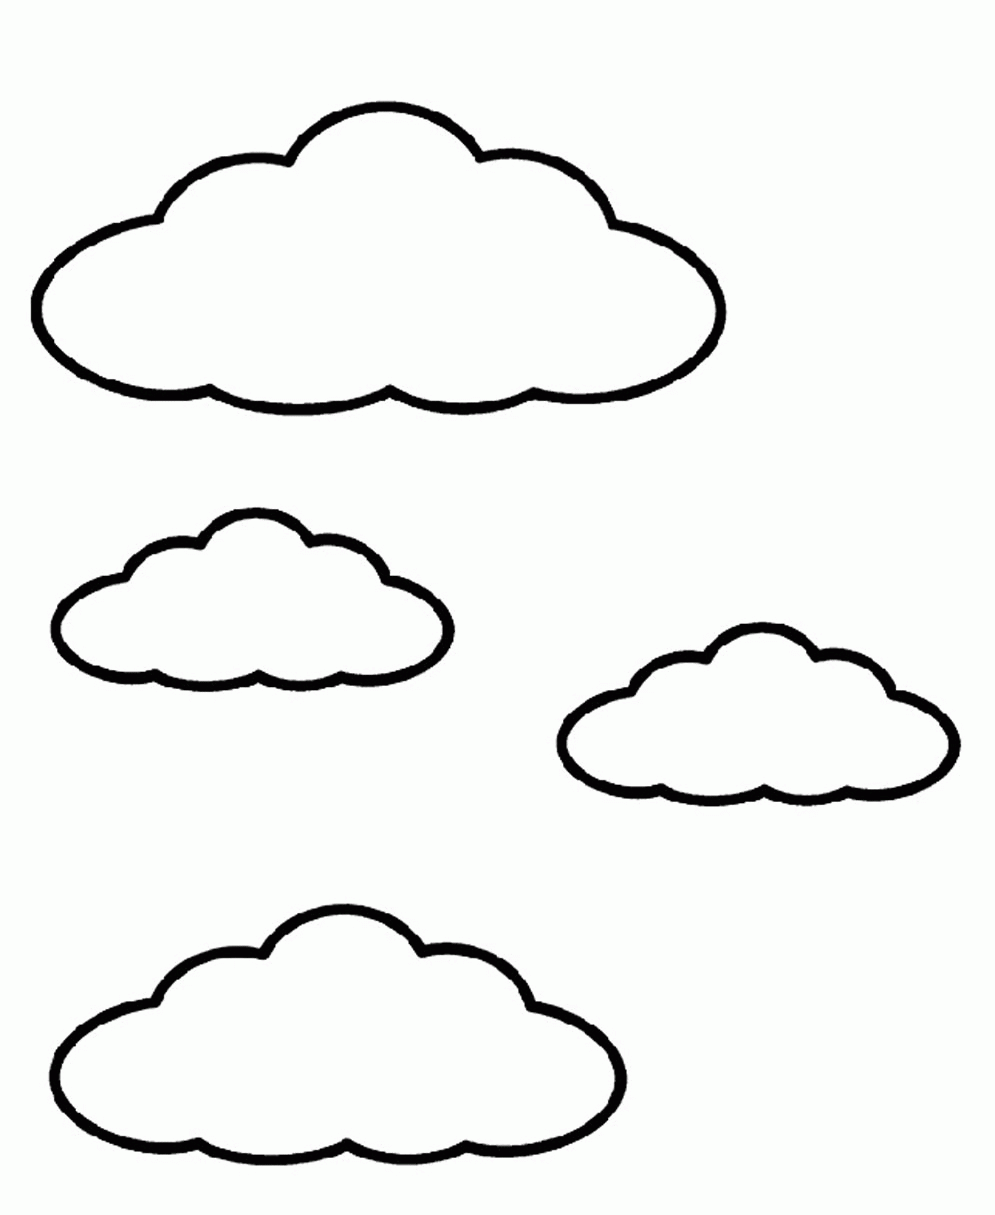 cloud-coloring-page-0026-q1